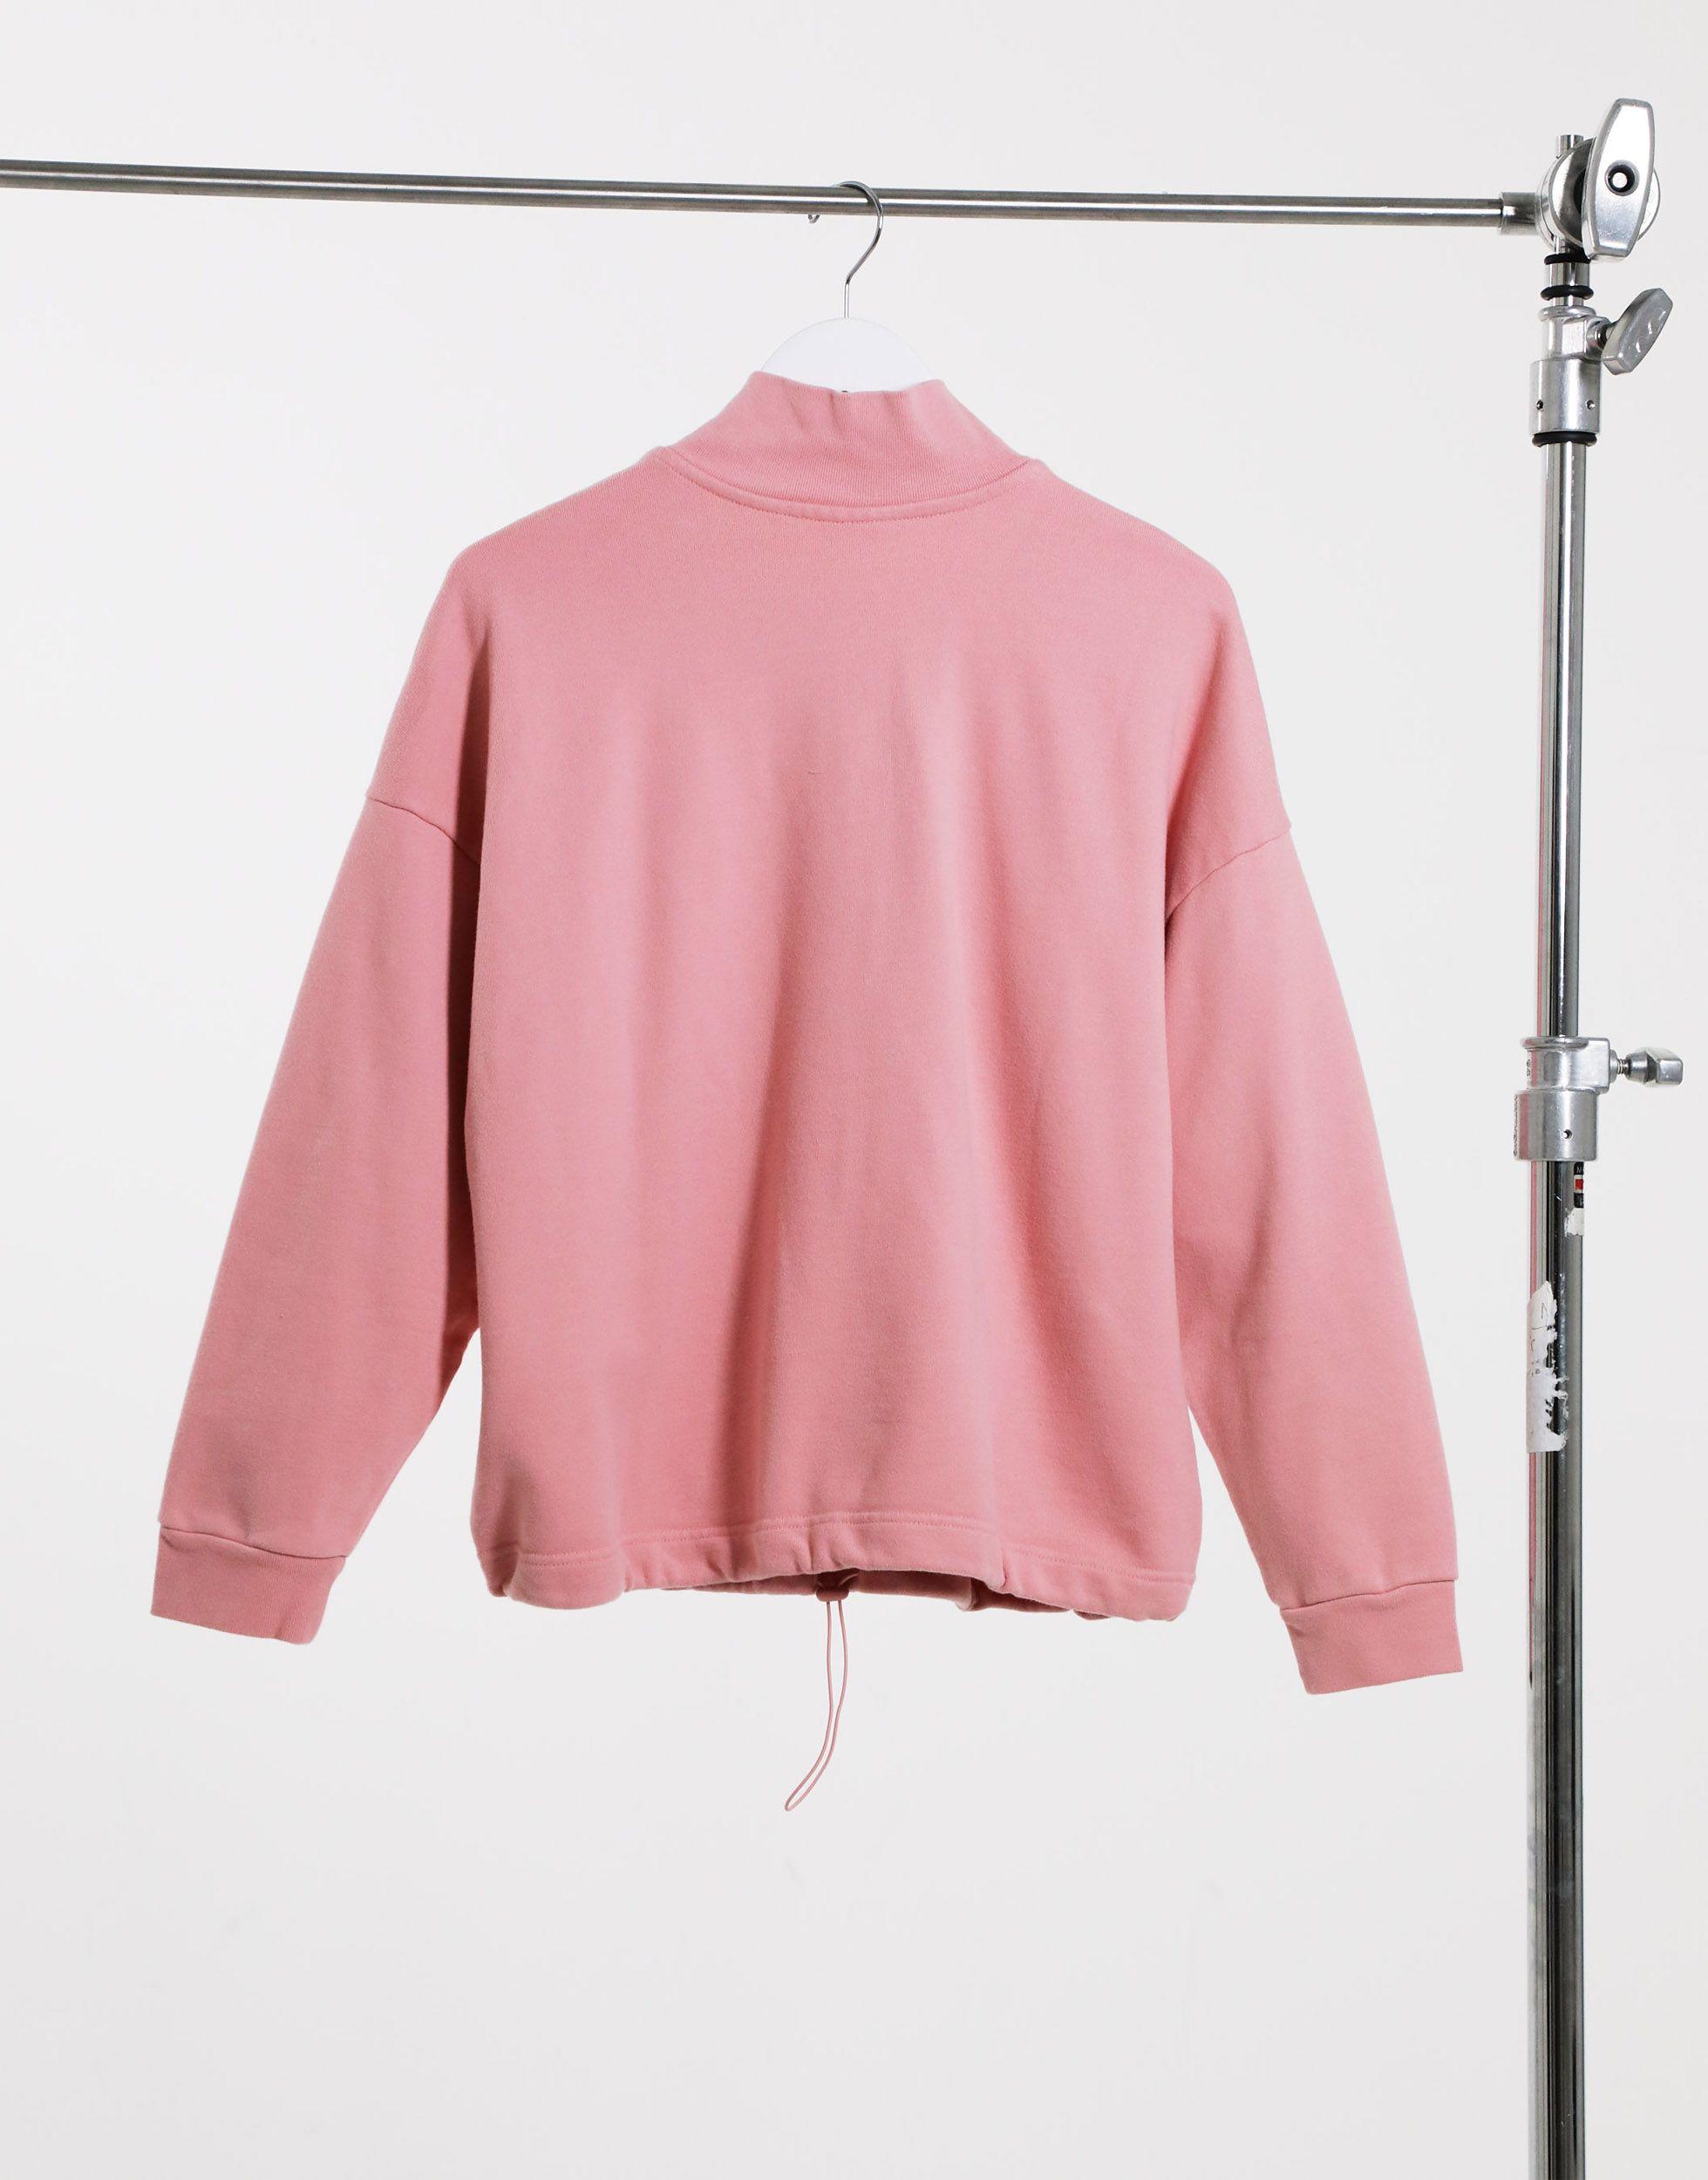 Levi's Pom Quarter Zip Sweatshirt in Pink - Lyst